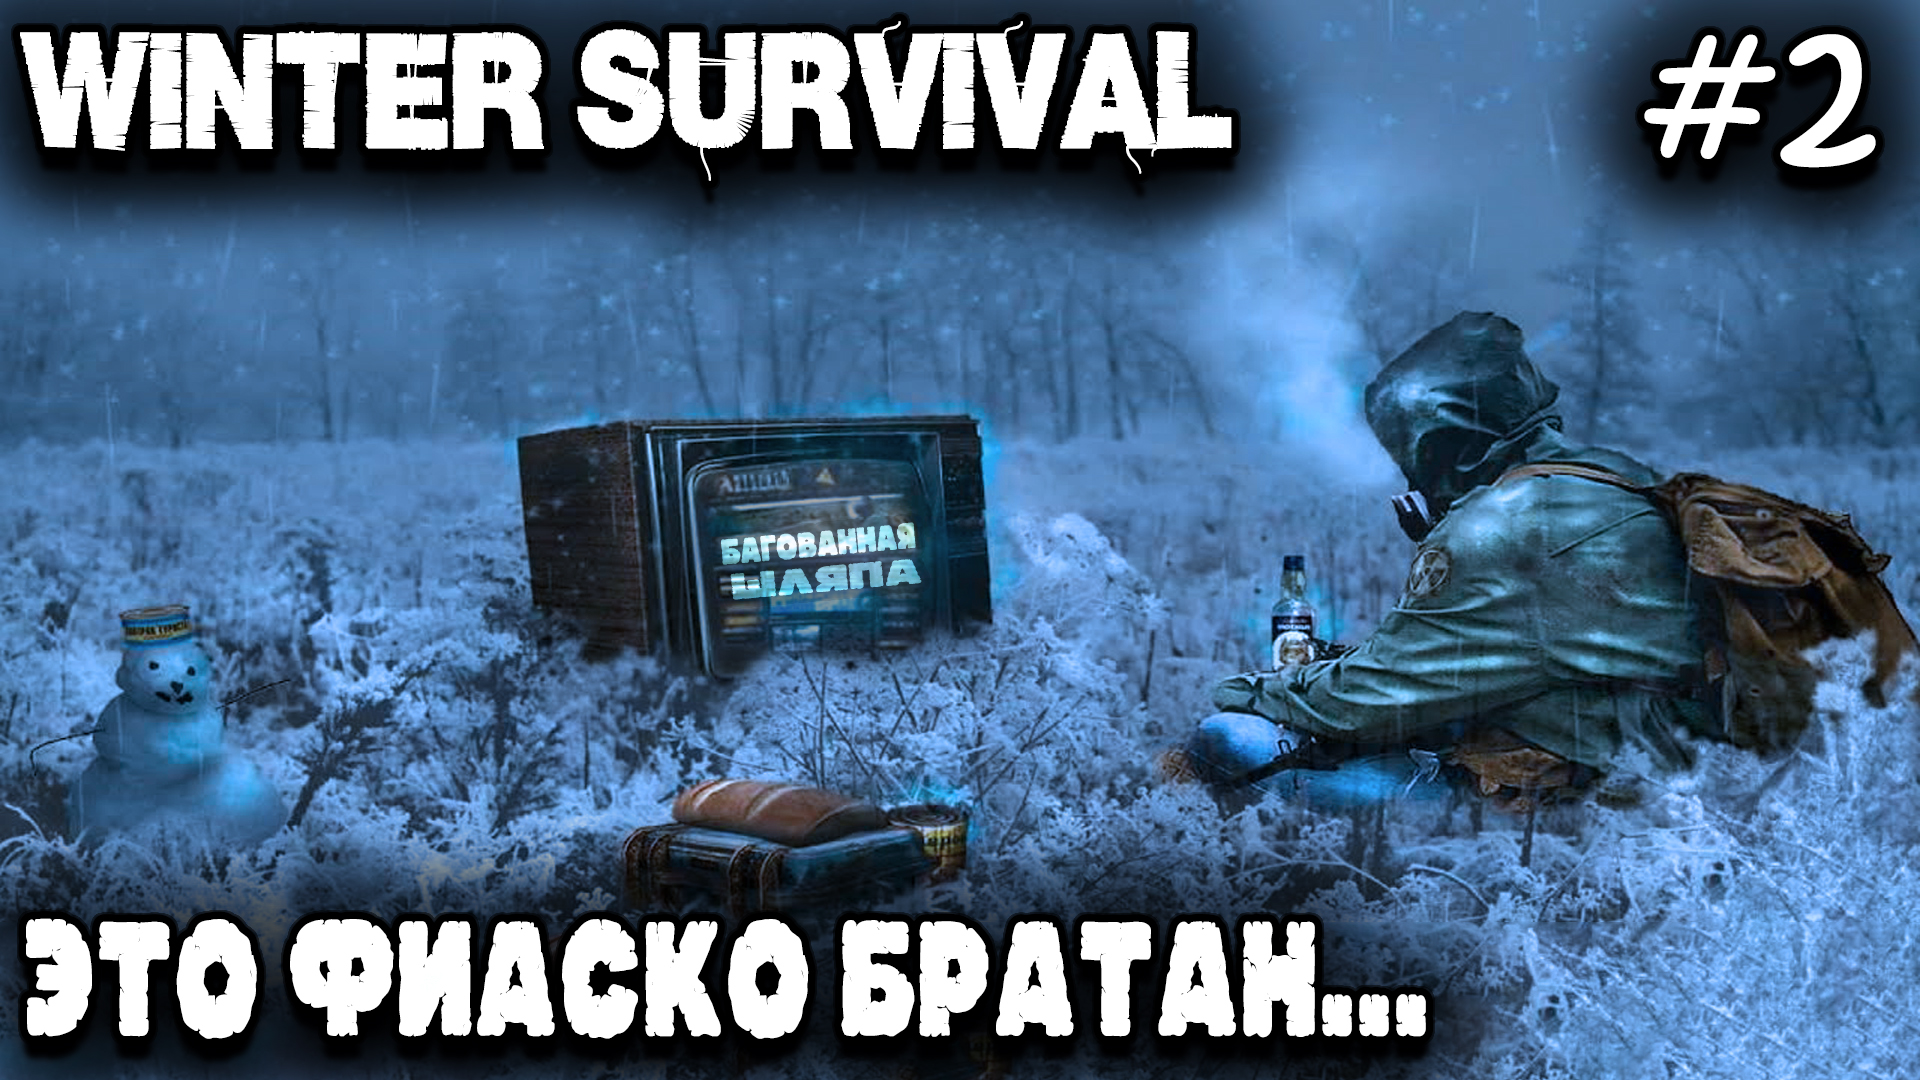 Winter Survival - удручающий финал 1 акта игры, которая не смогла и потерпела полное фиаско #2